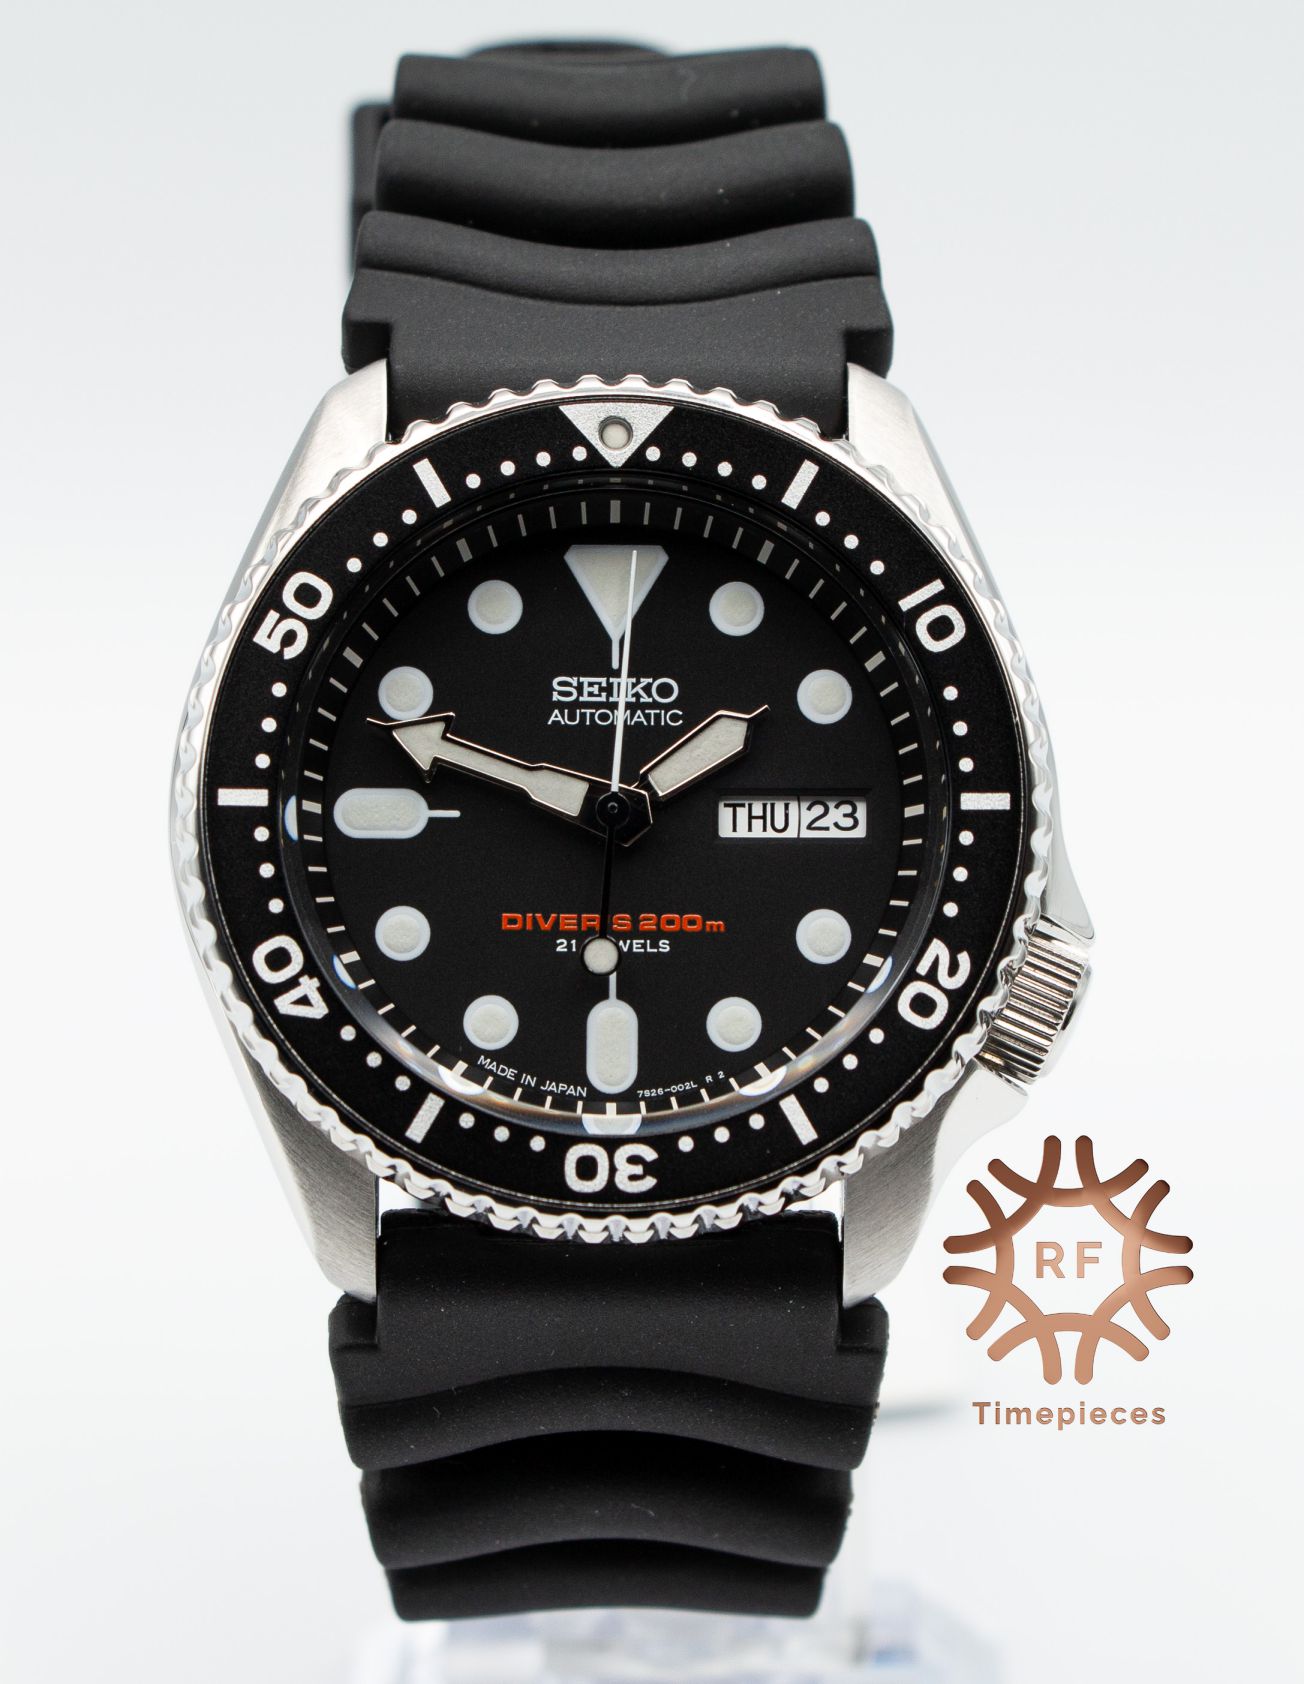 Seiko SKX007-J1 - RF Timepieces